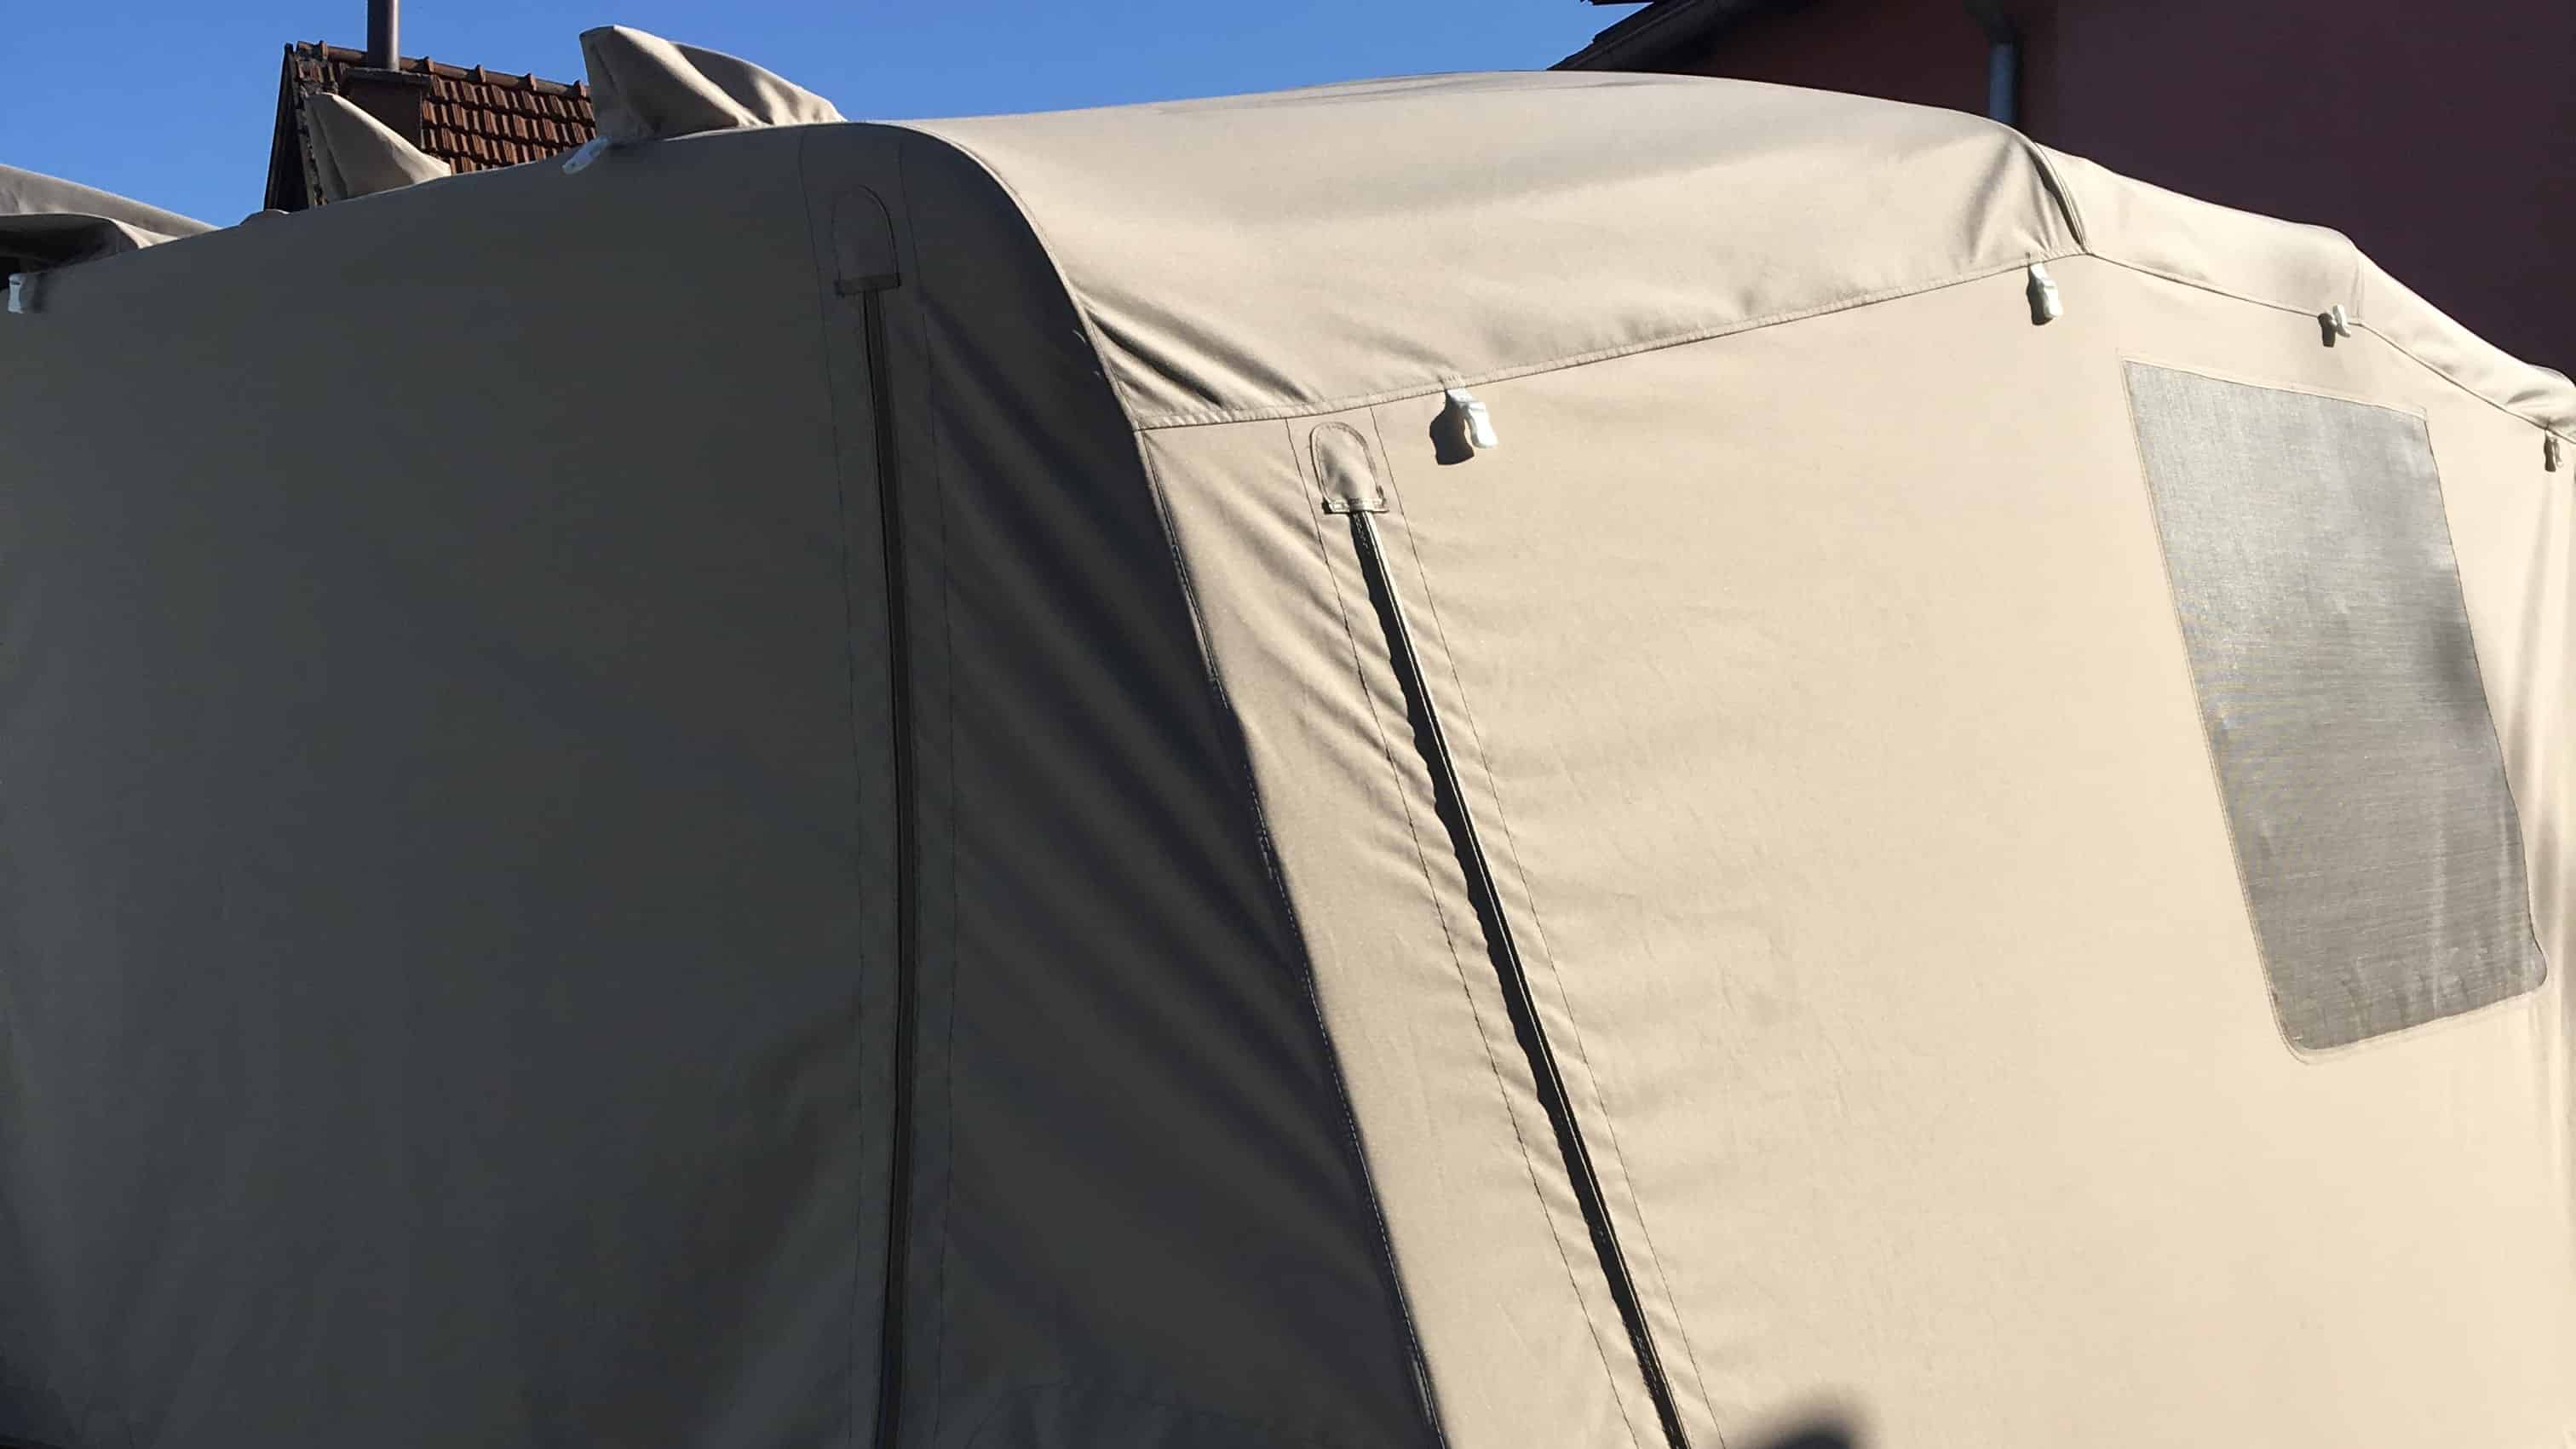 šator tenda u materijalu Sunbrella Surlast s PVC prozorima koji imaju mogućnost rolanja te integriranim komarnicima za GUMENJAK BARRACUDA